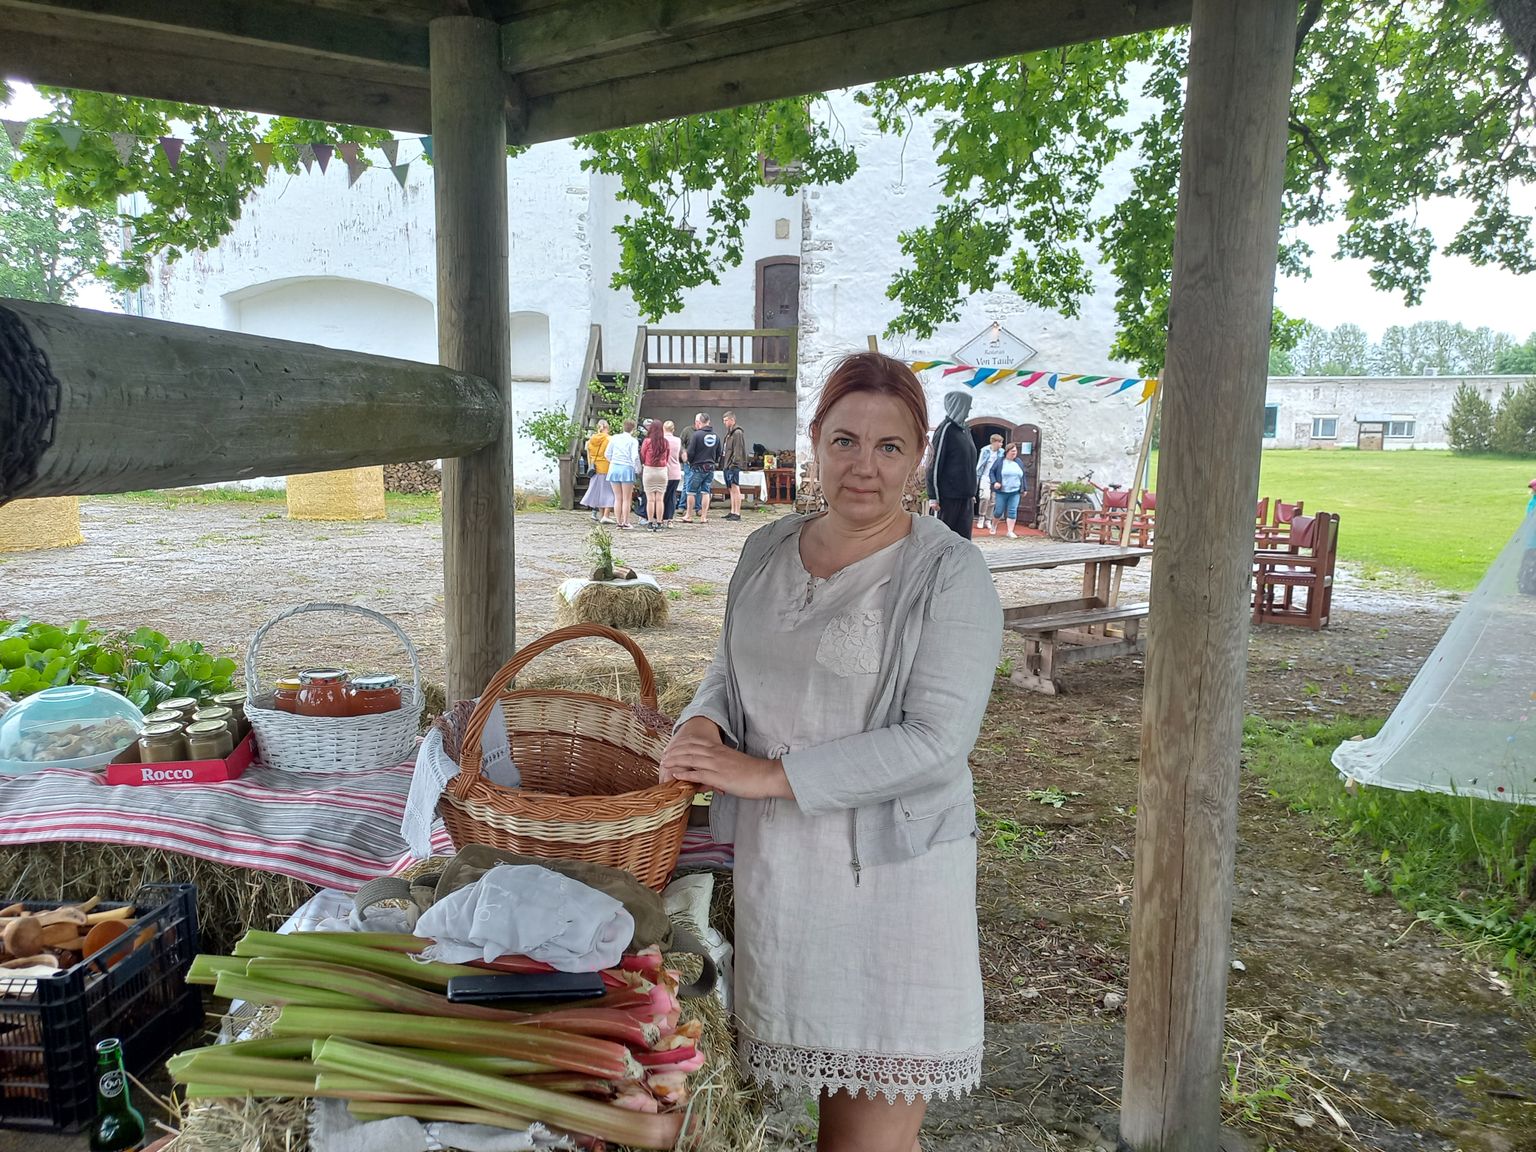 Пуртсеское деревенское общество устроило рядом с крепостью деревенский рынок, на котором Рейли Соппе торговала своей рыбной продукцией.